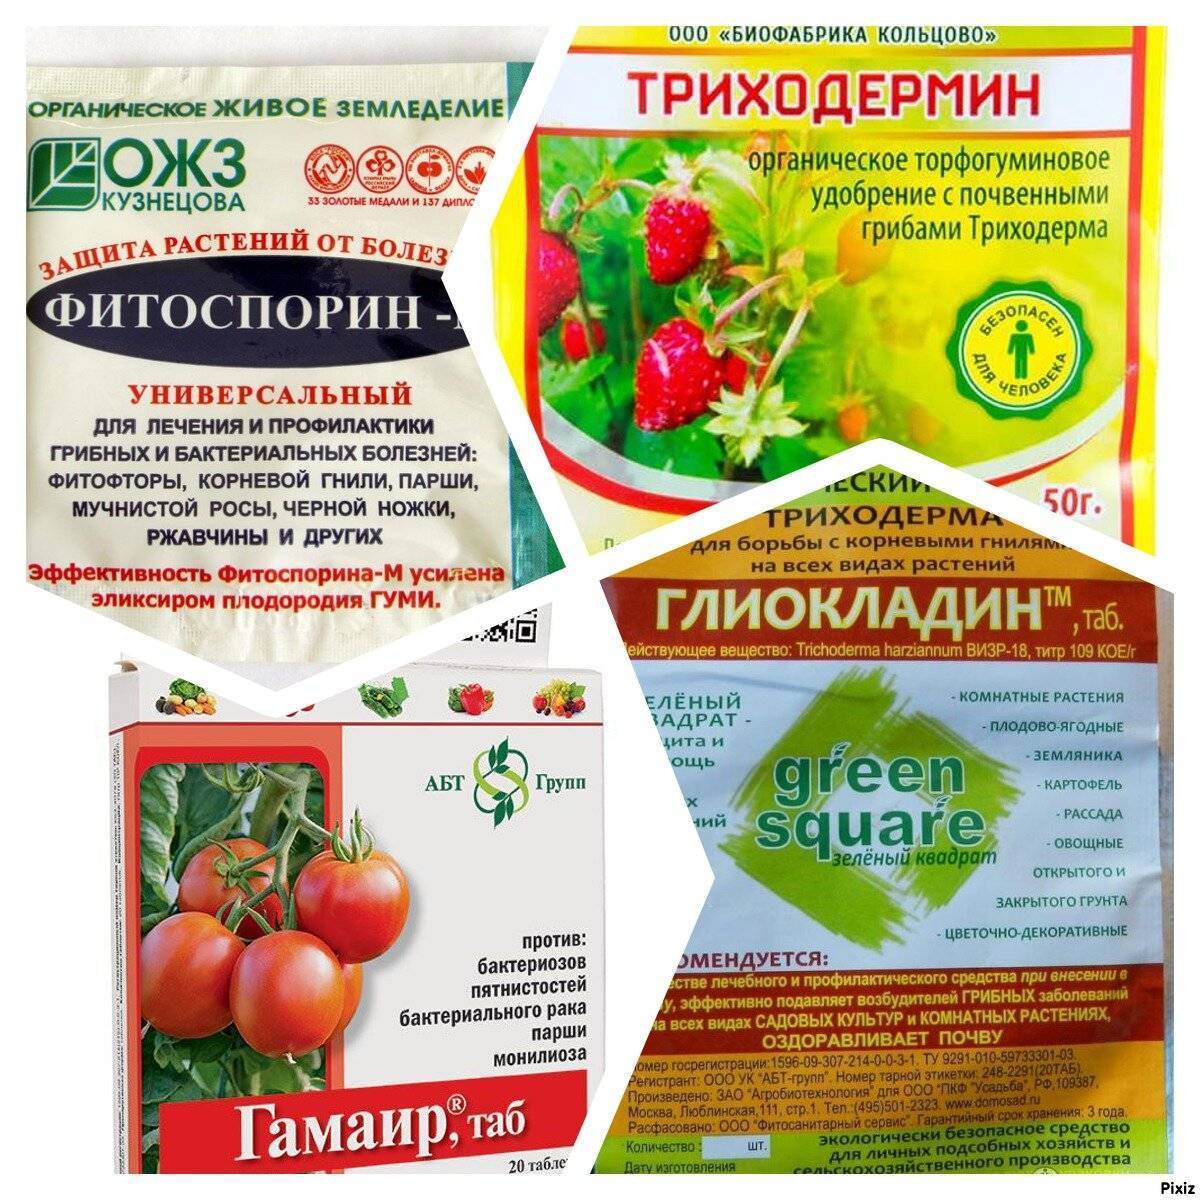 Фитоспорин м: инструкции по применению пасты, порошка и жидкого фитоспорина на томатах, огурце и других культурах. отзывы